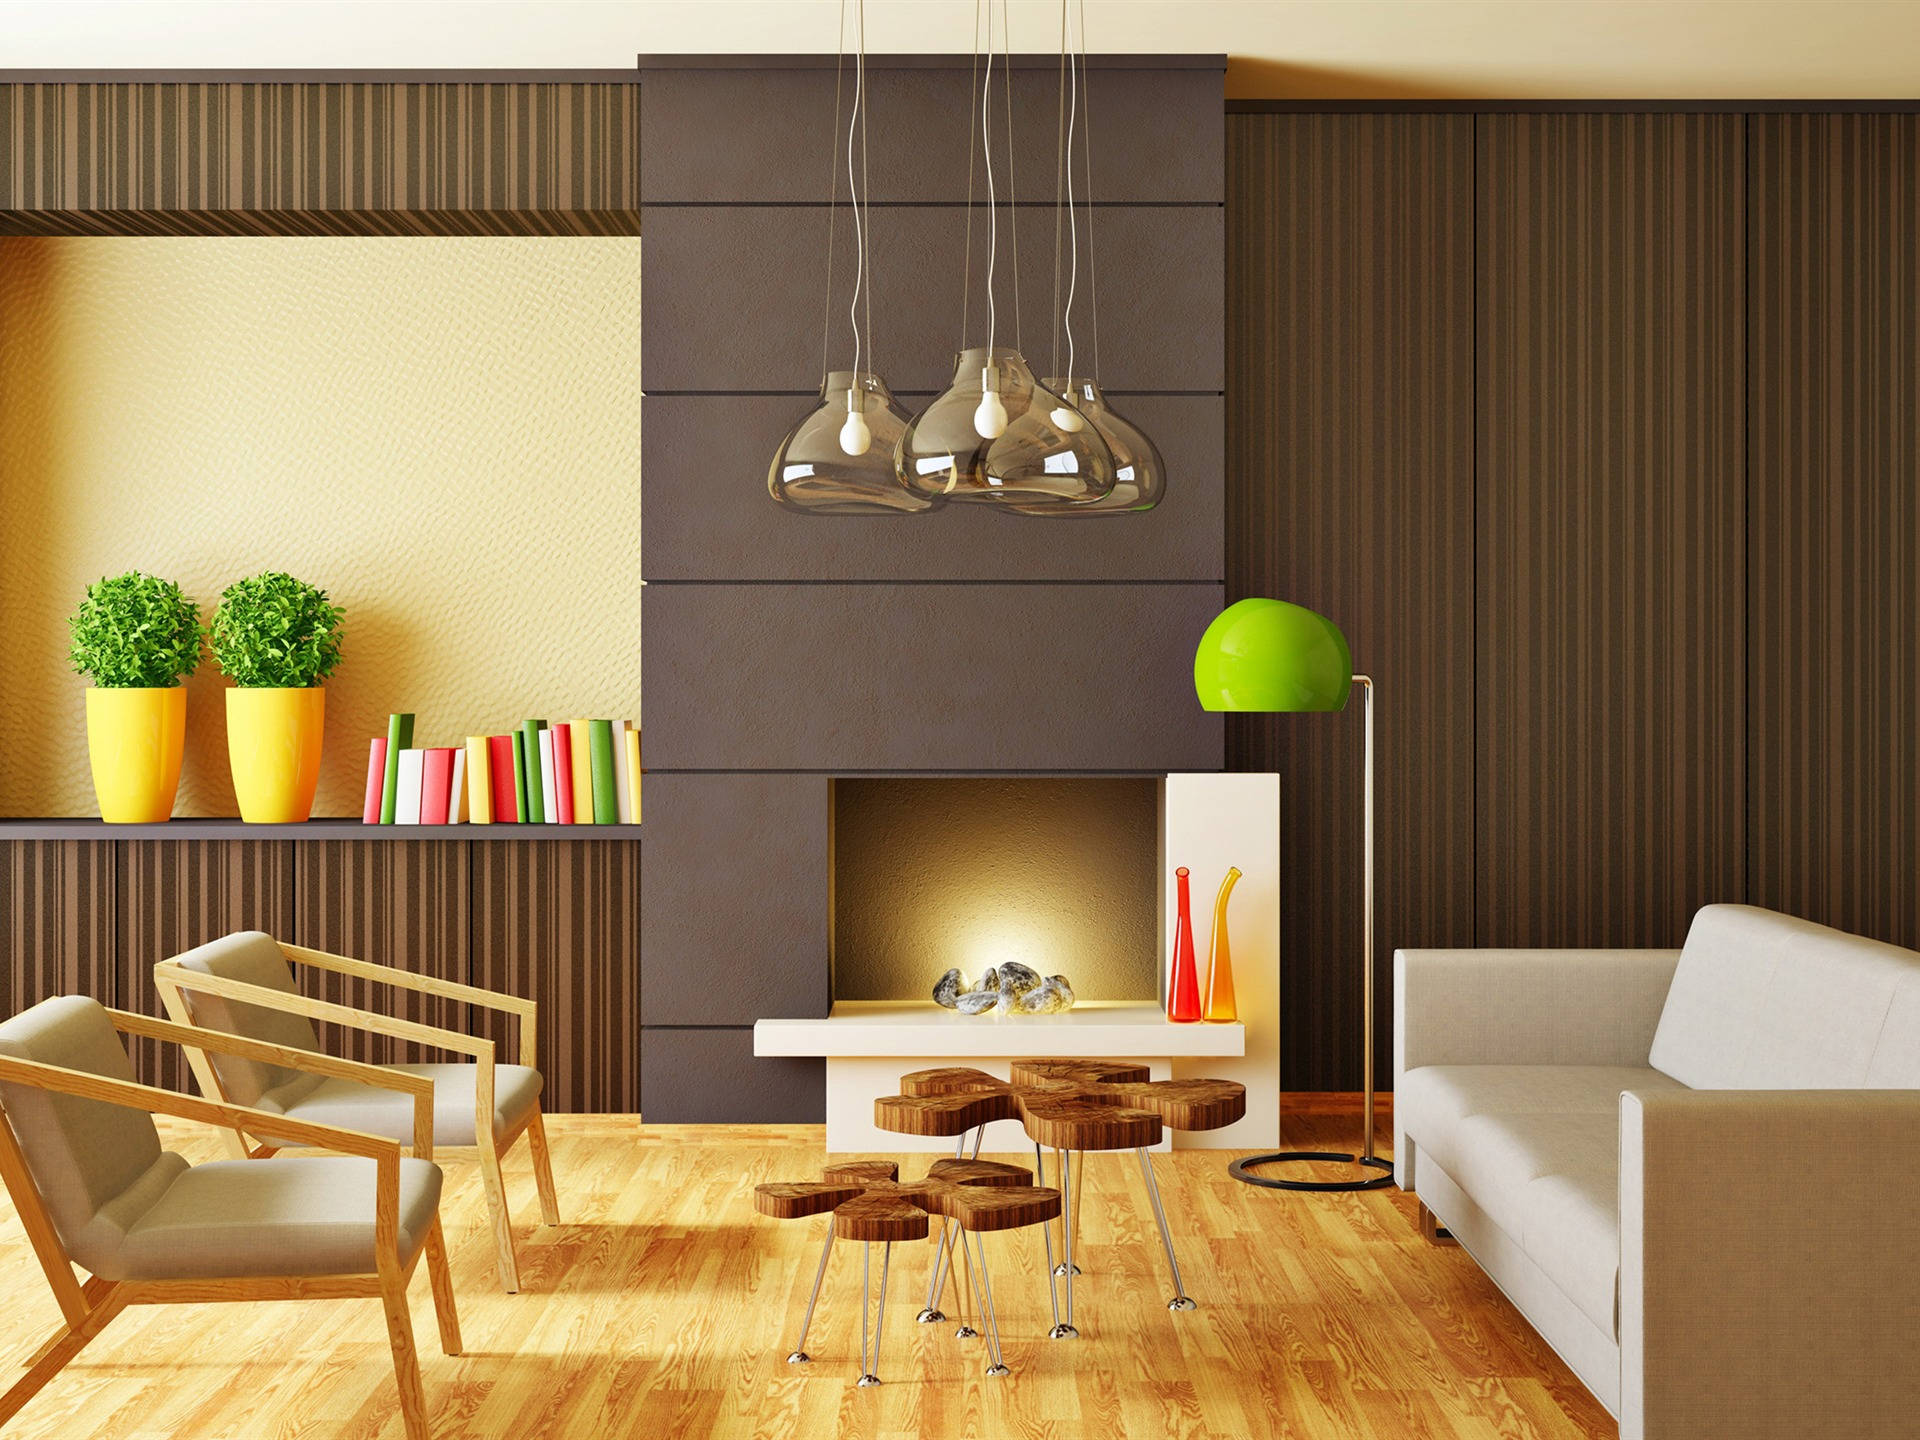 Elegantly Designed Living Room With Wooden Furniture Background